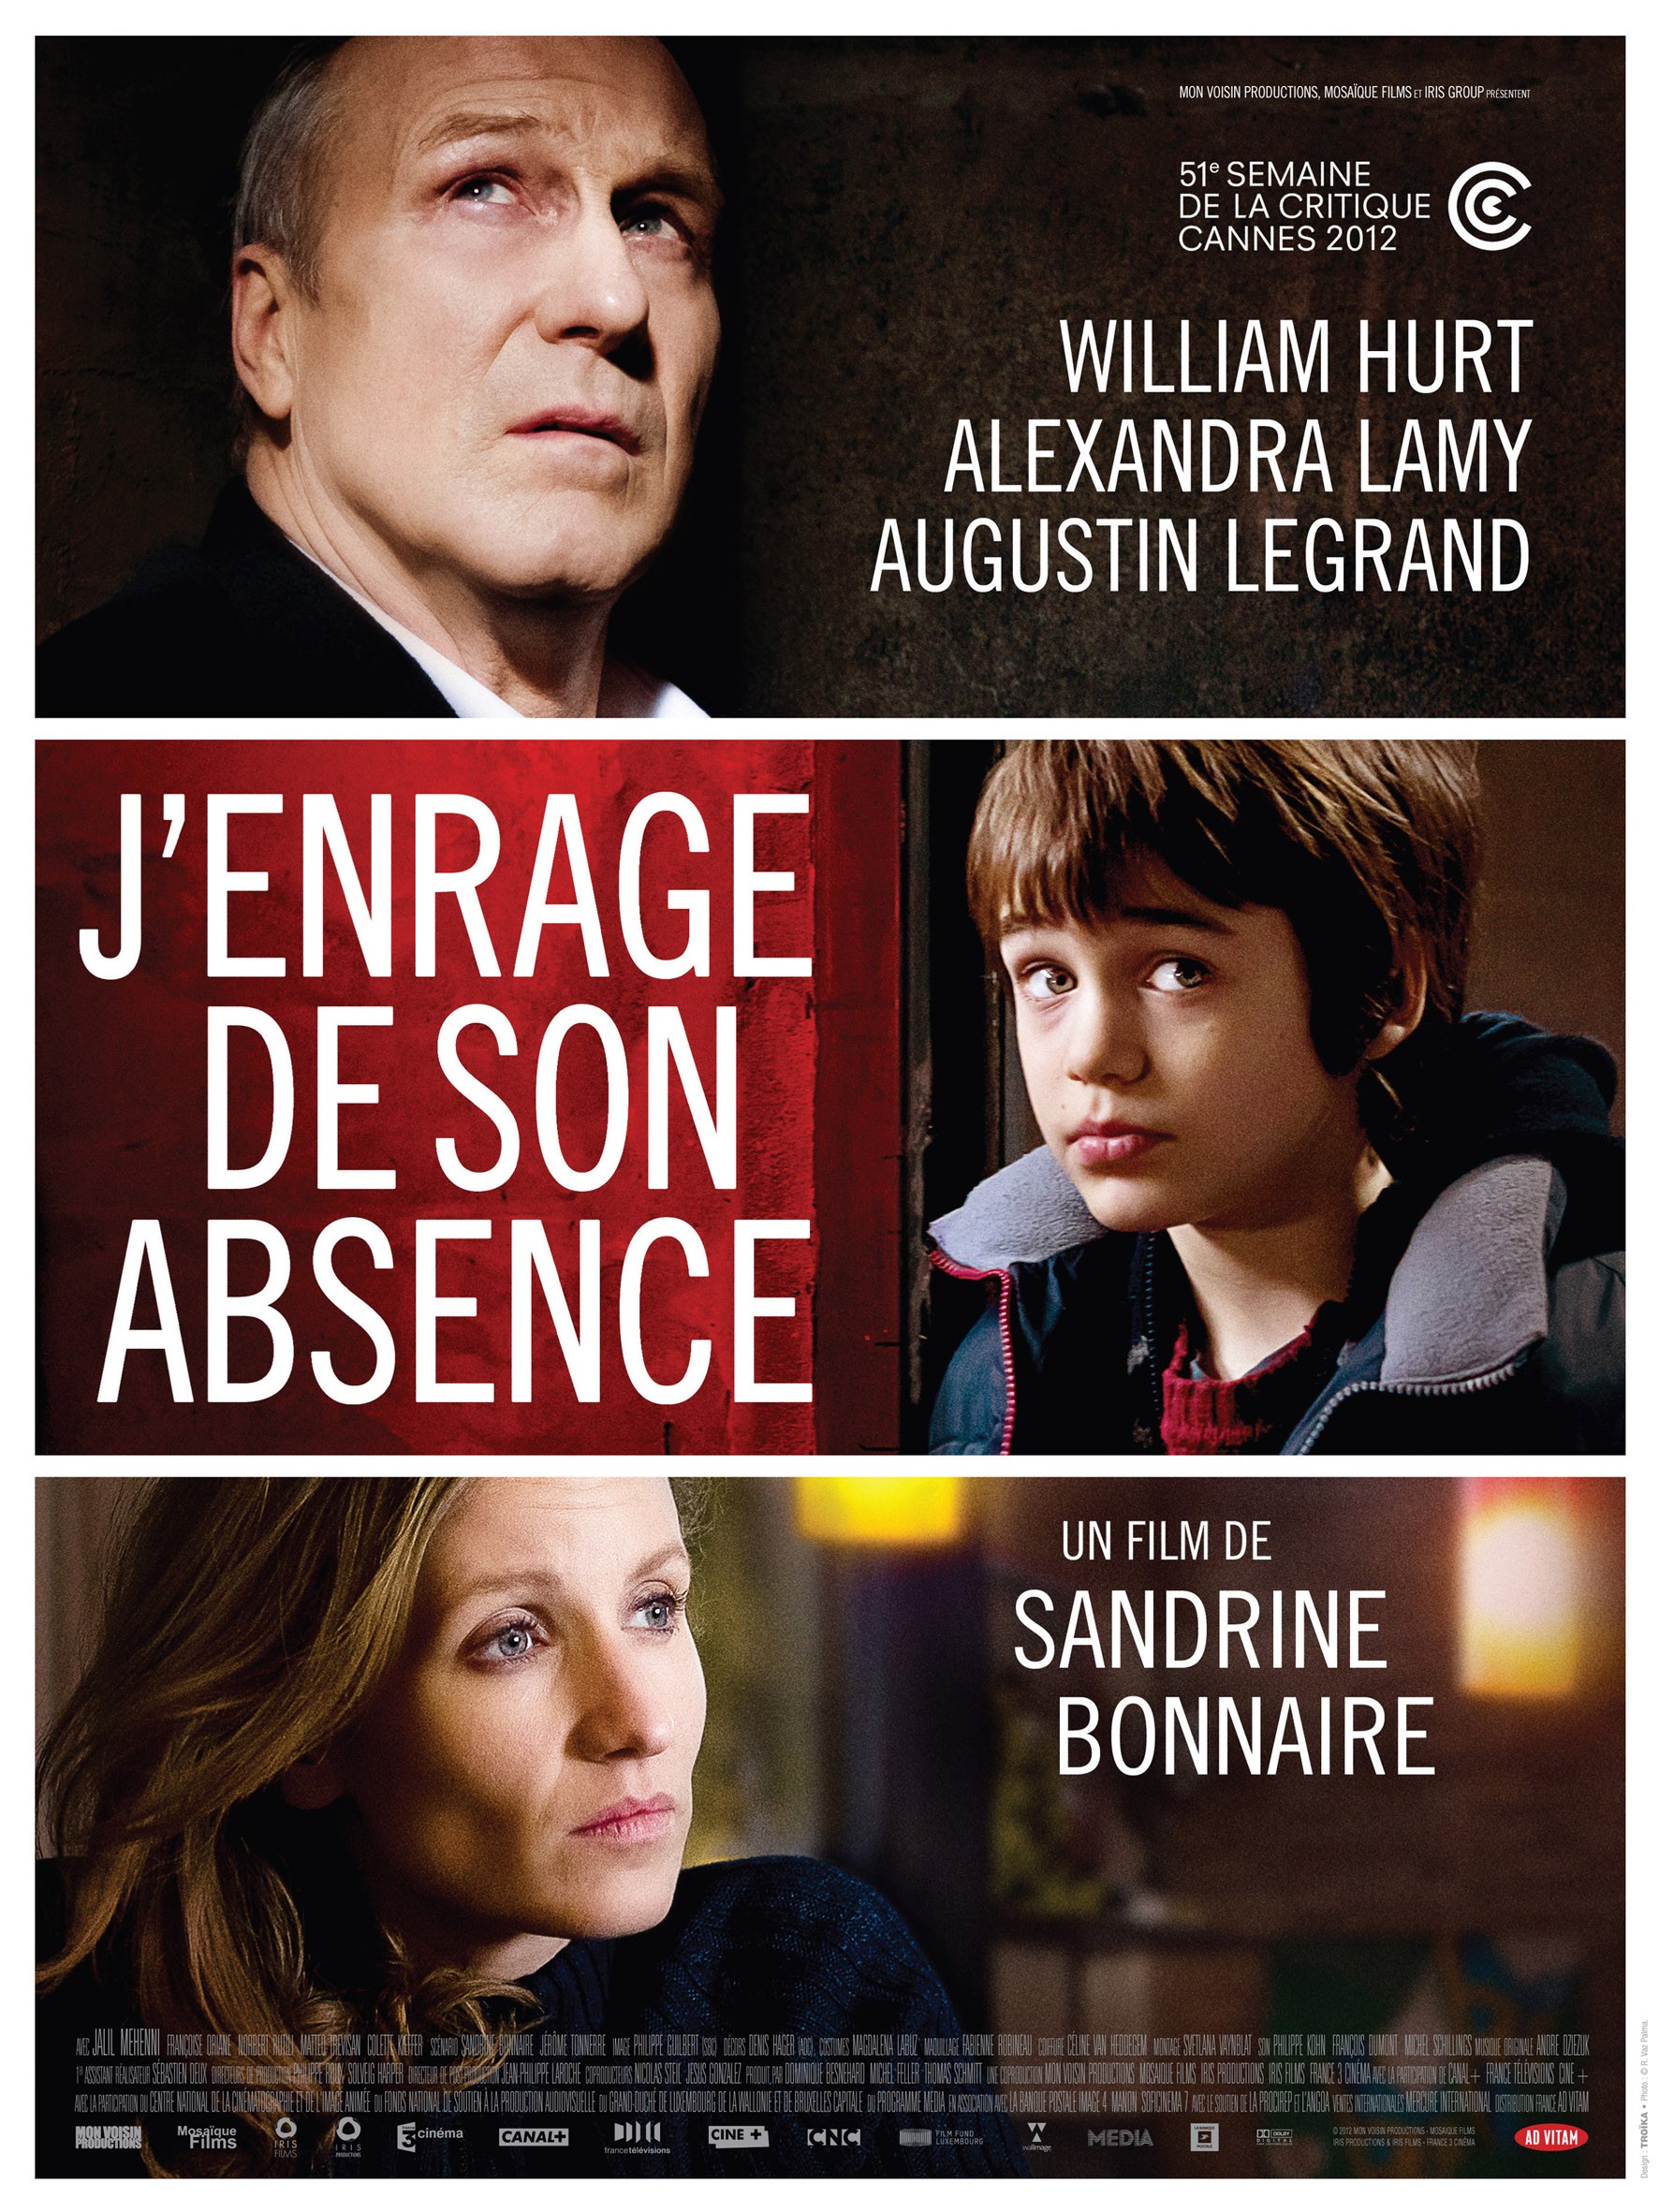 Mega Sized Movie Poster Image for J'enrage de son absence (#2 of 2)